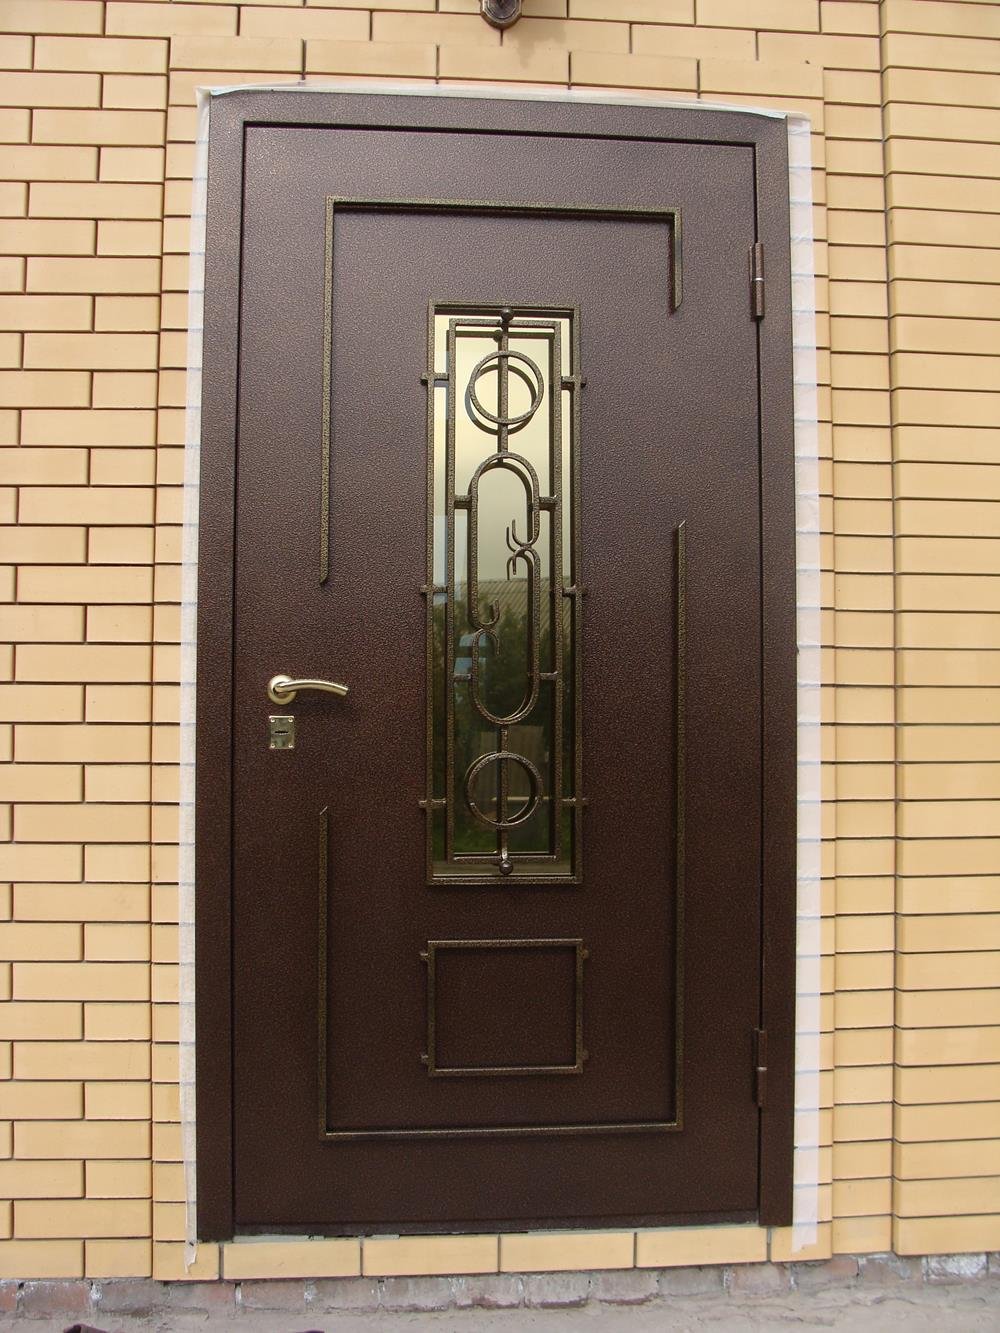 Дверь железная входная стеклом. Двери с ковкой и стеклом входные. Дверь с ковкой и стеклопакетом. Дверь со стеклом входная. Металлическая дверь со стеклопакетом и ковкой.